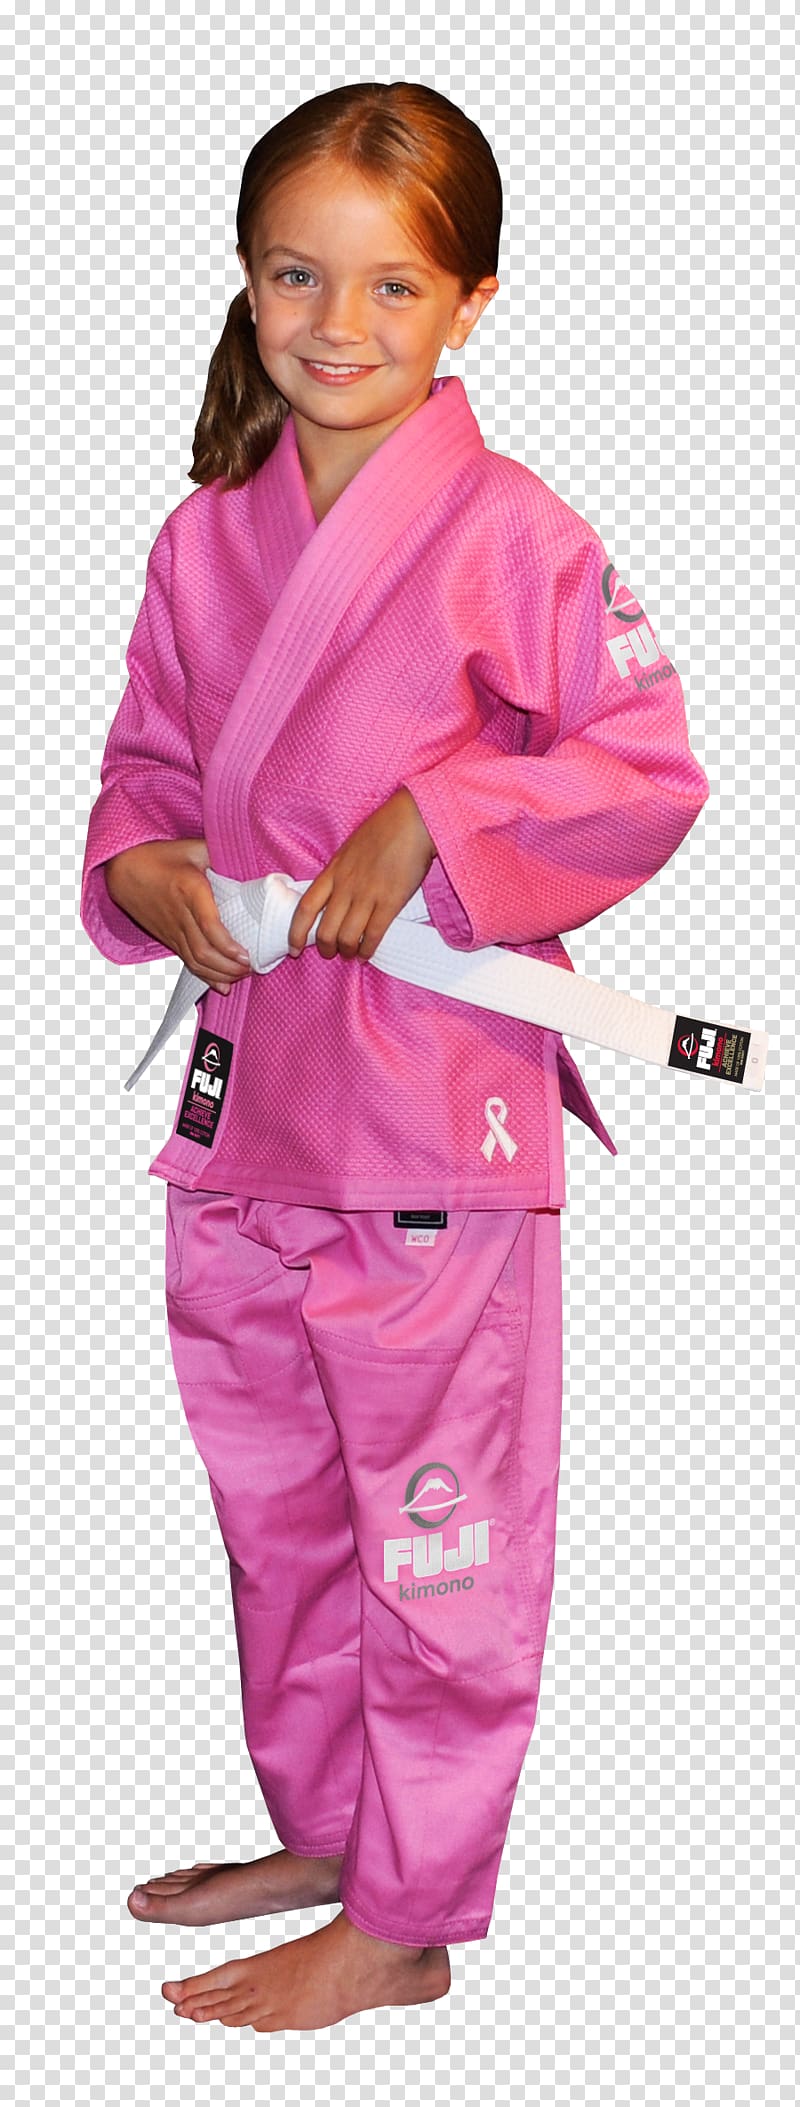 Brazilian jiu-jitsu gi Rash guard Judo Mixed martial arts, others transparent background PNG clipart